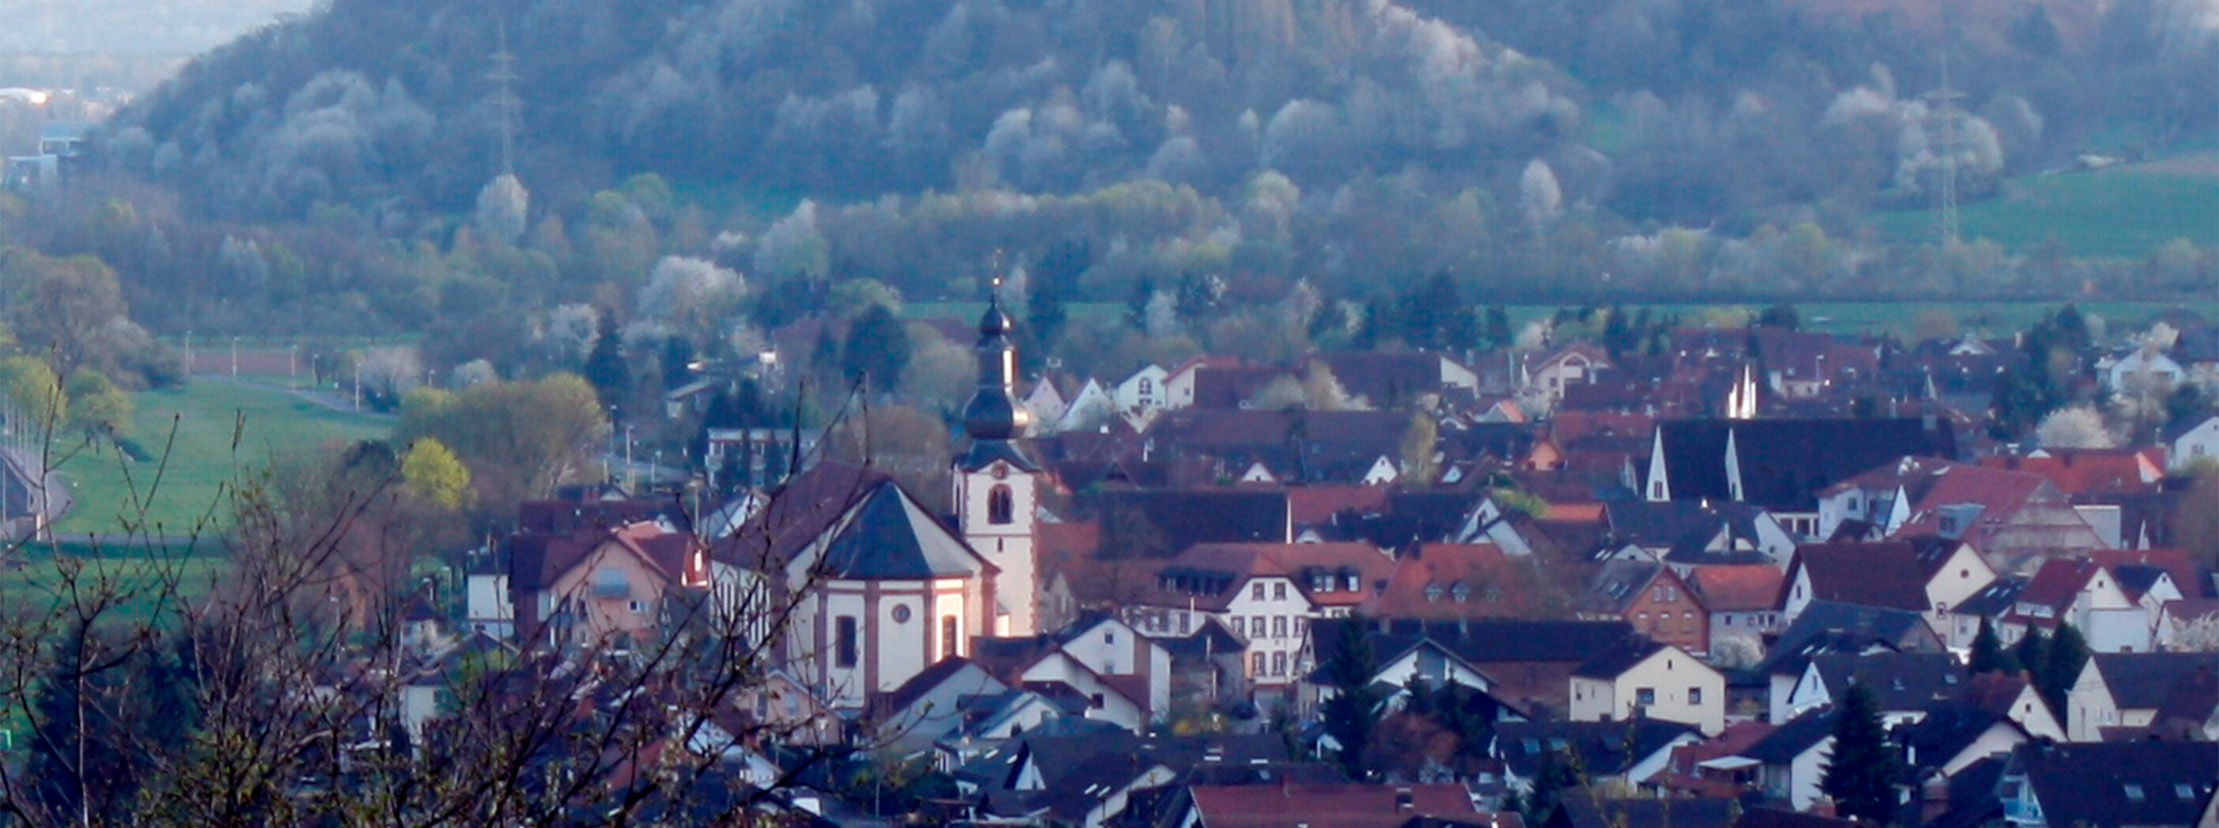 Gemeinde Großwallstadt